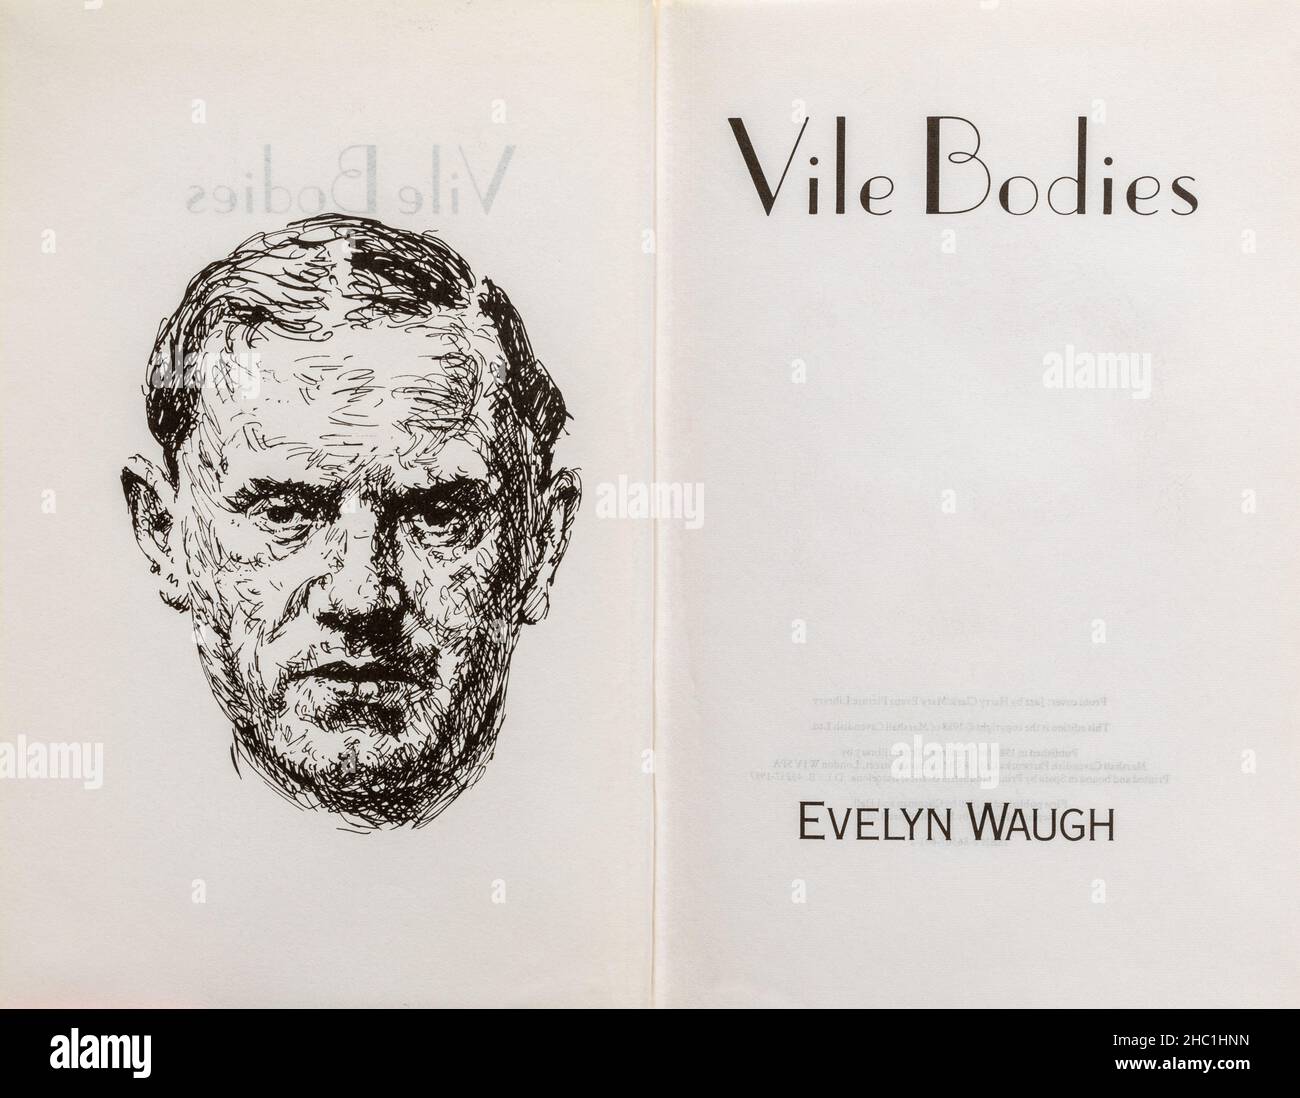 Livre vile bodies - roman classique d'Evelyn Waugh.Page de titre et dessin de l'auteur. Banque D'Images